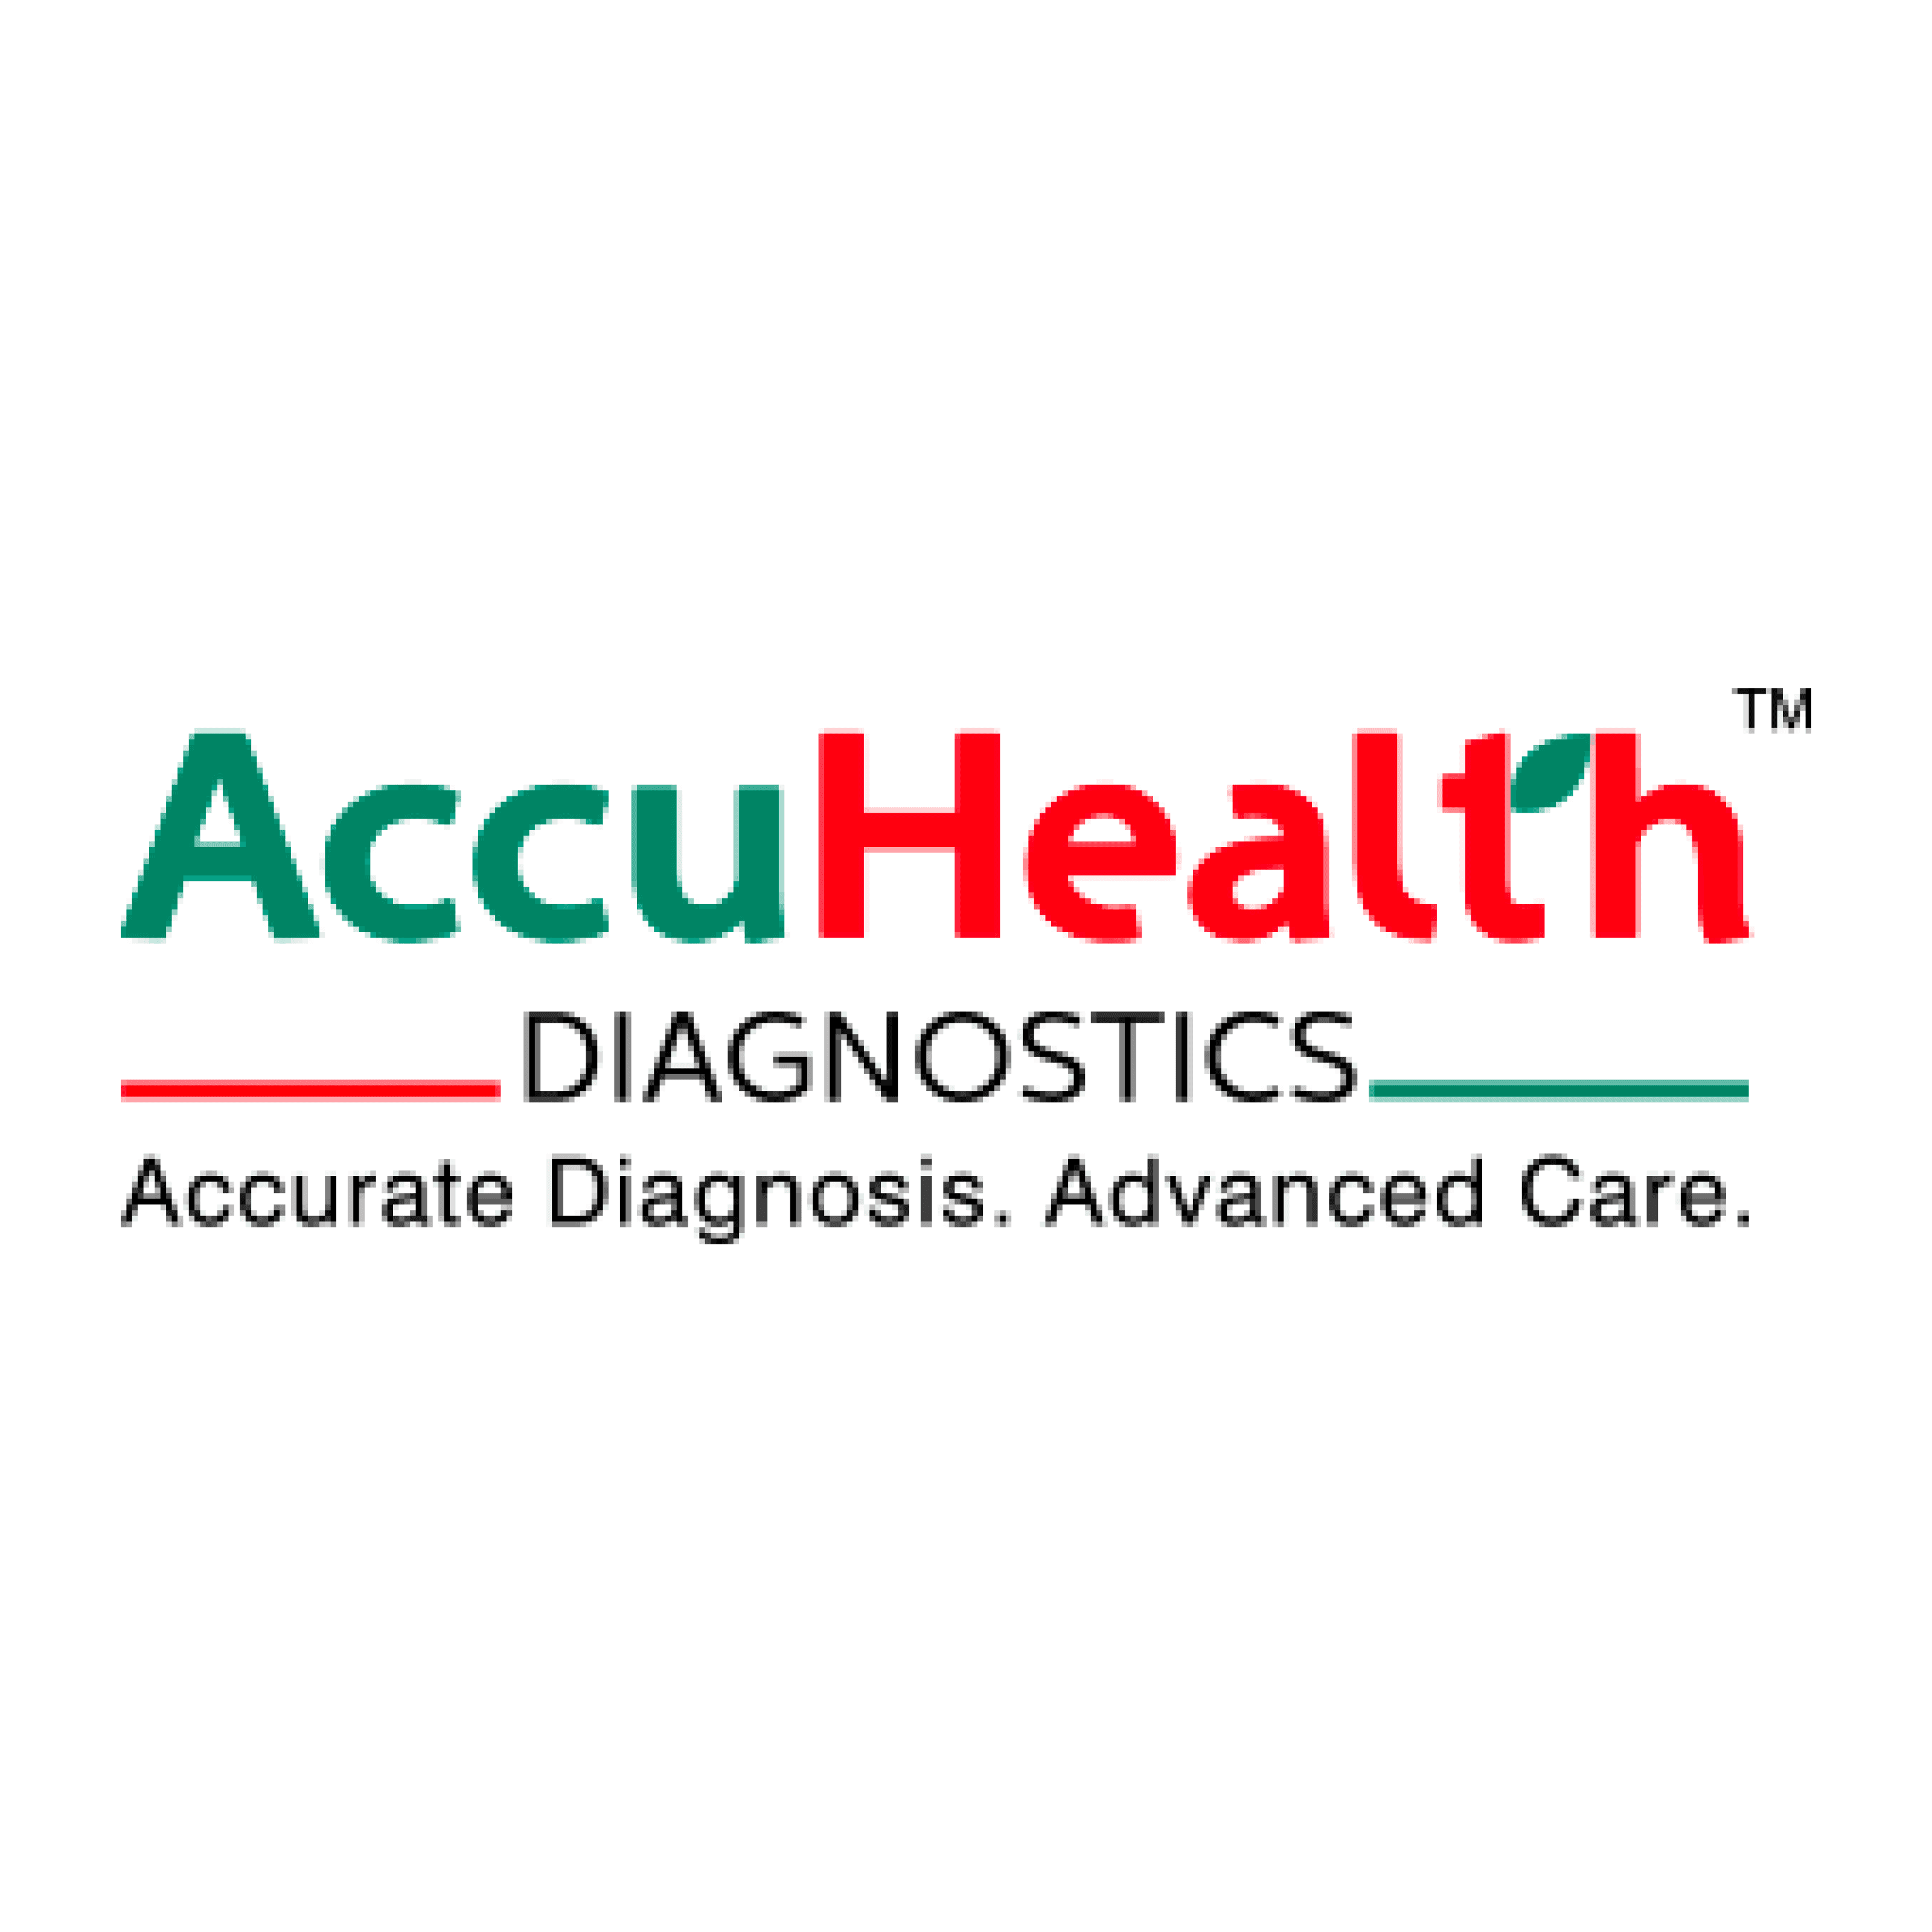 AccuHealth Diagnostics